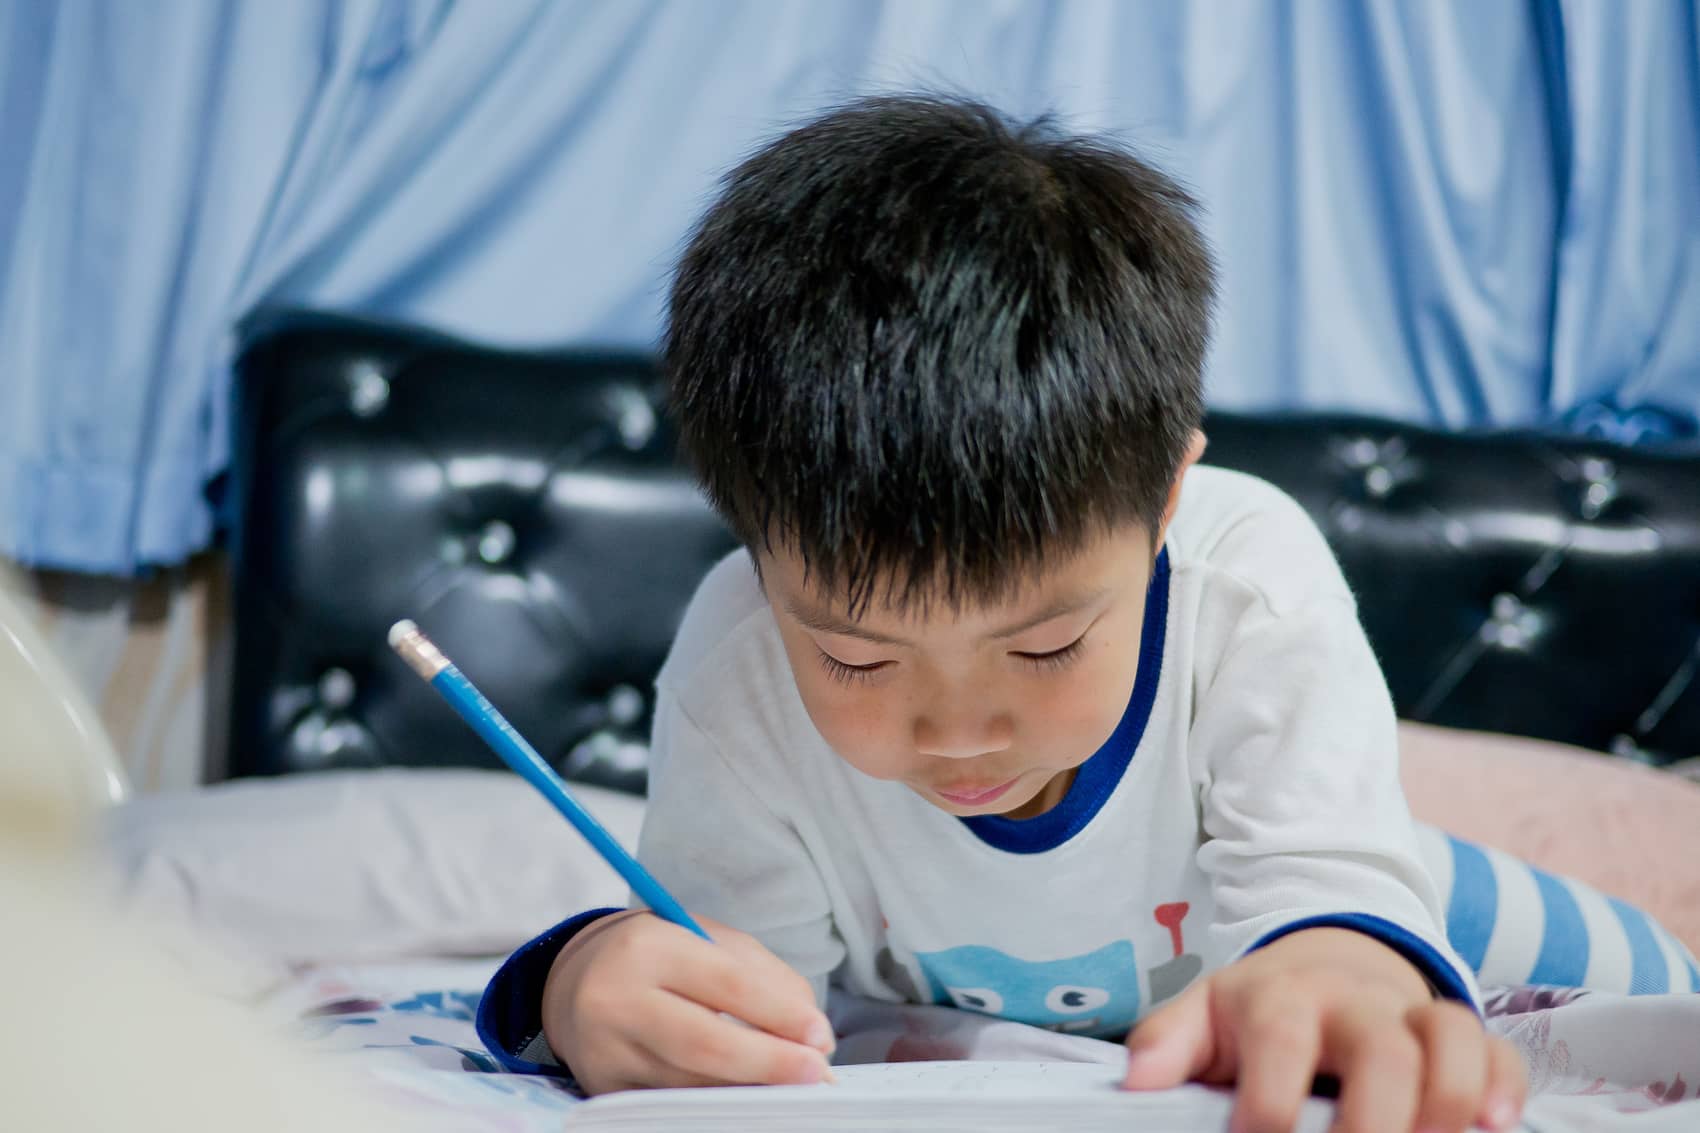 Escrever à mão é benéfico para as crianças 04